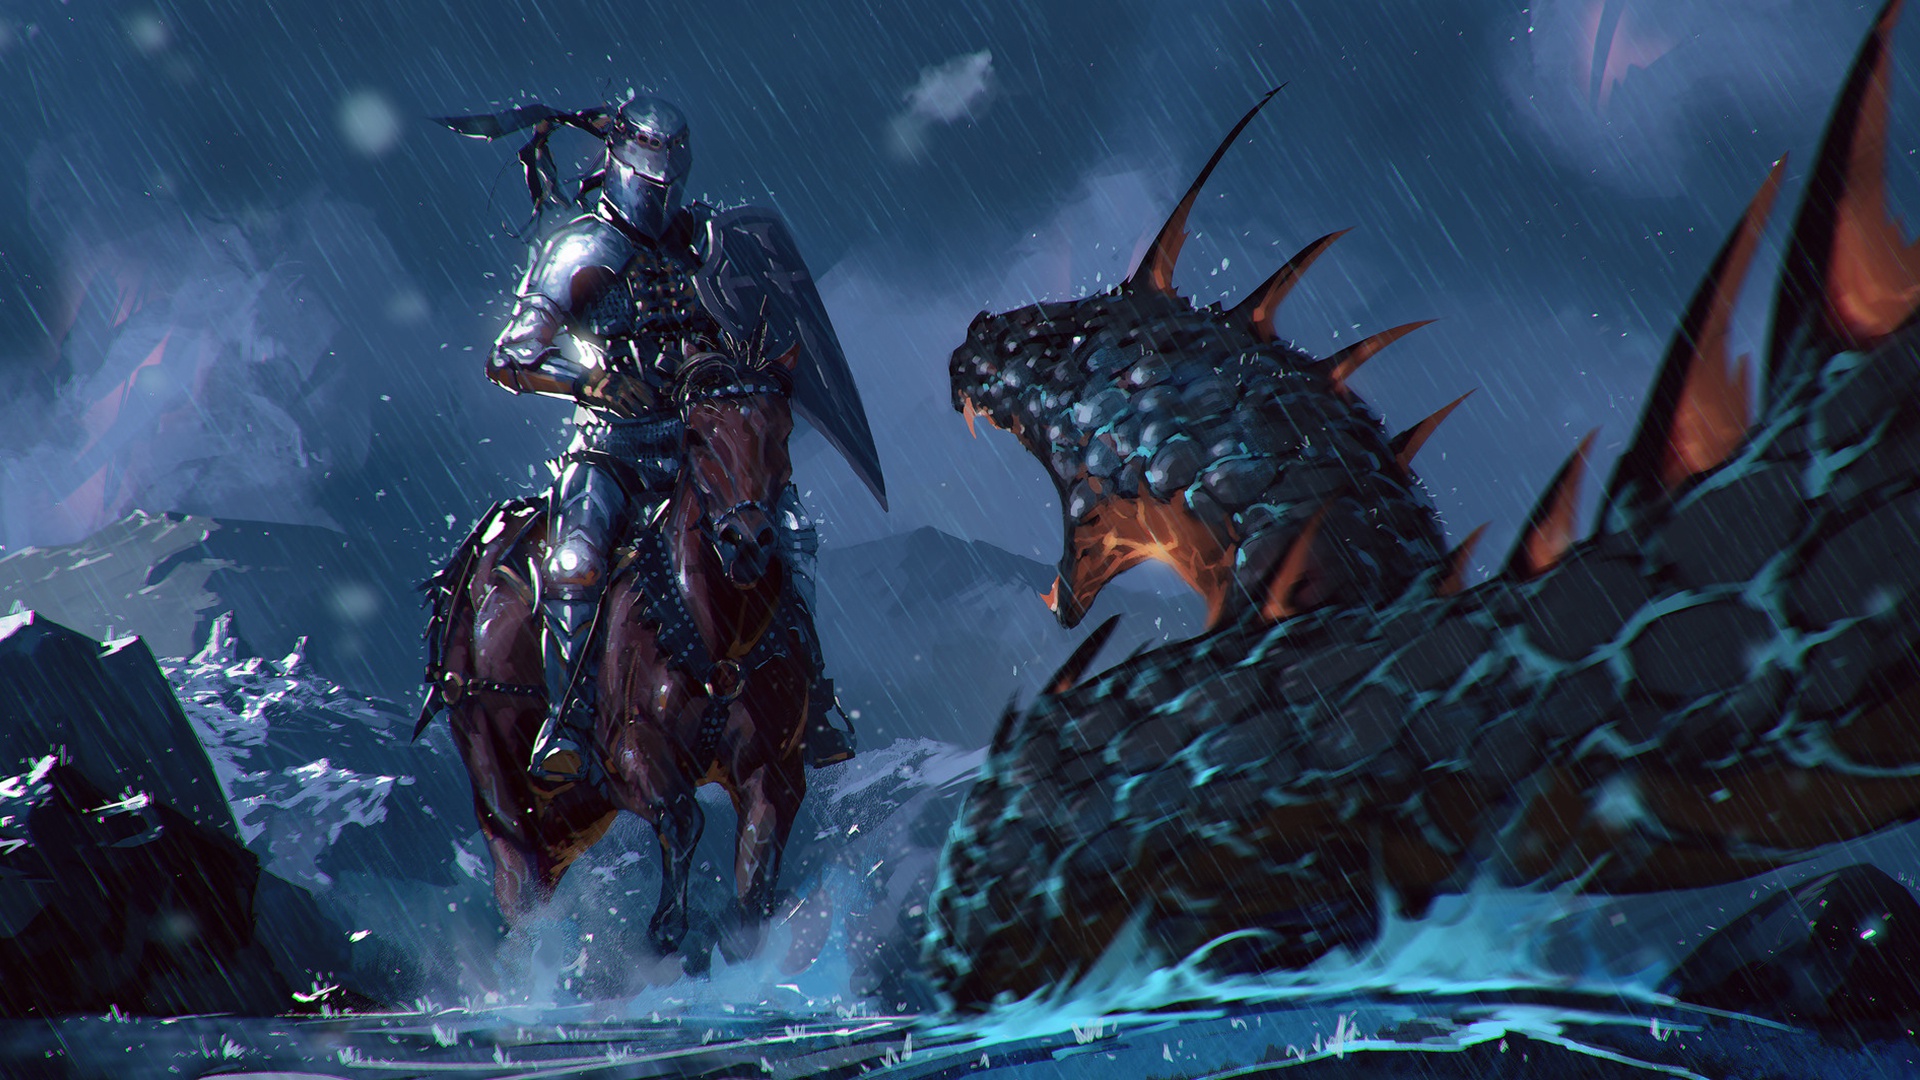 Warrior Armor Rain Horse Creature 1920x1080